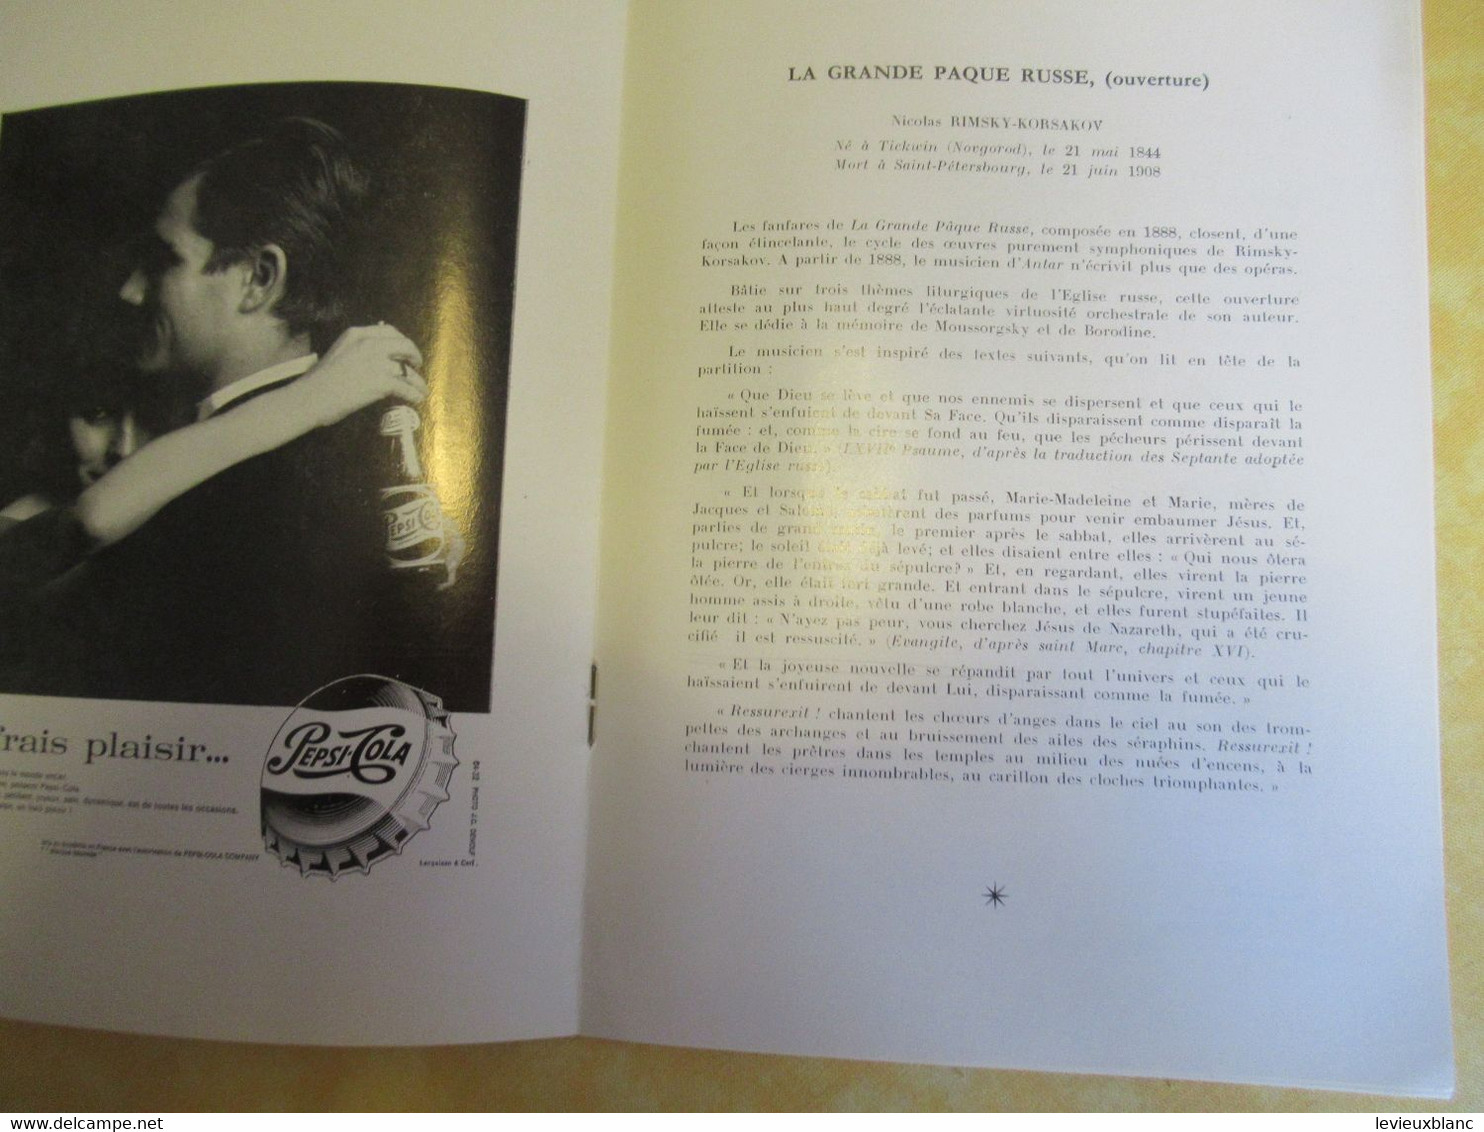 Programme Ancien/Musique/Théâtre Nat.Palais De Chaillot/Ass..des Concerts PASDELOUP/A.d'Arco- M Benedetto/1966   PROG327 - Programma's